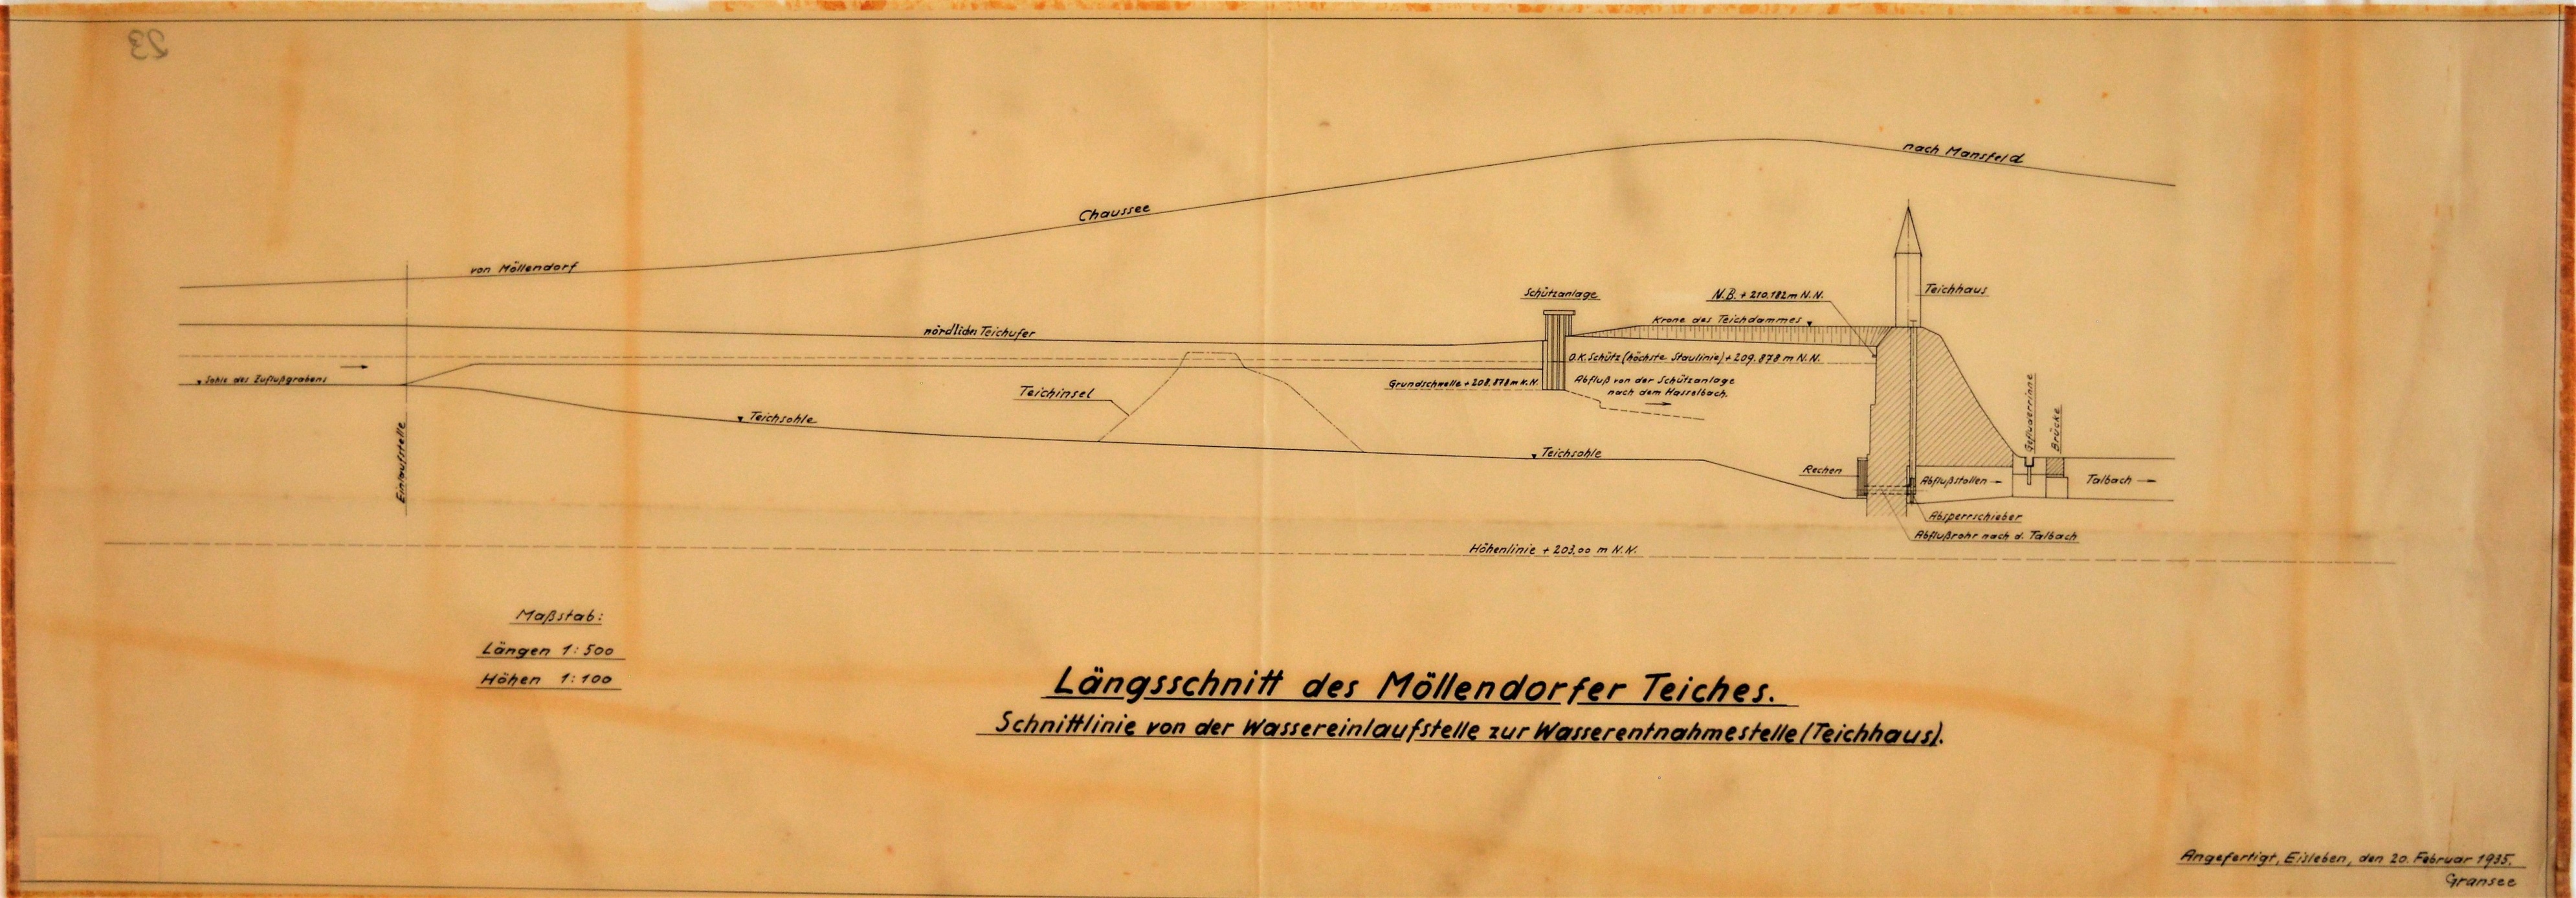 Längsschnitt des Möllendorfer Teiches. Schnittlinie von der Wassereinlaufstelle zur Wasserentnahmestelle (Teichhaus). (Mansfeld-Museum im Humboldt-Schloss CC BY-NC-SA)